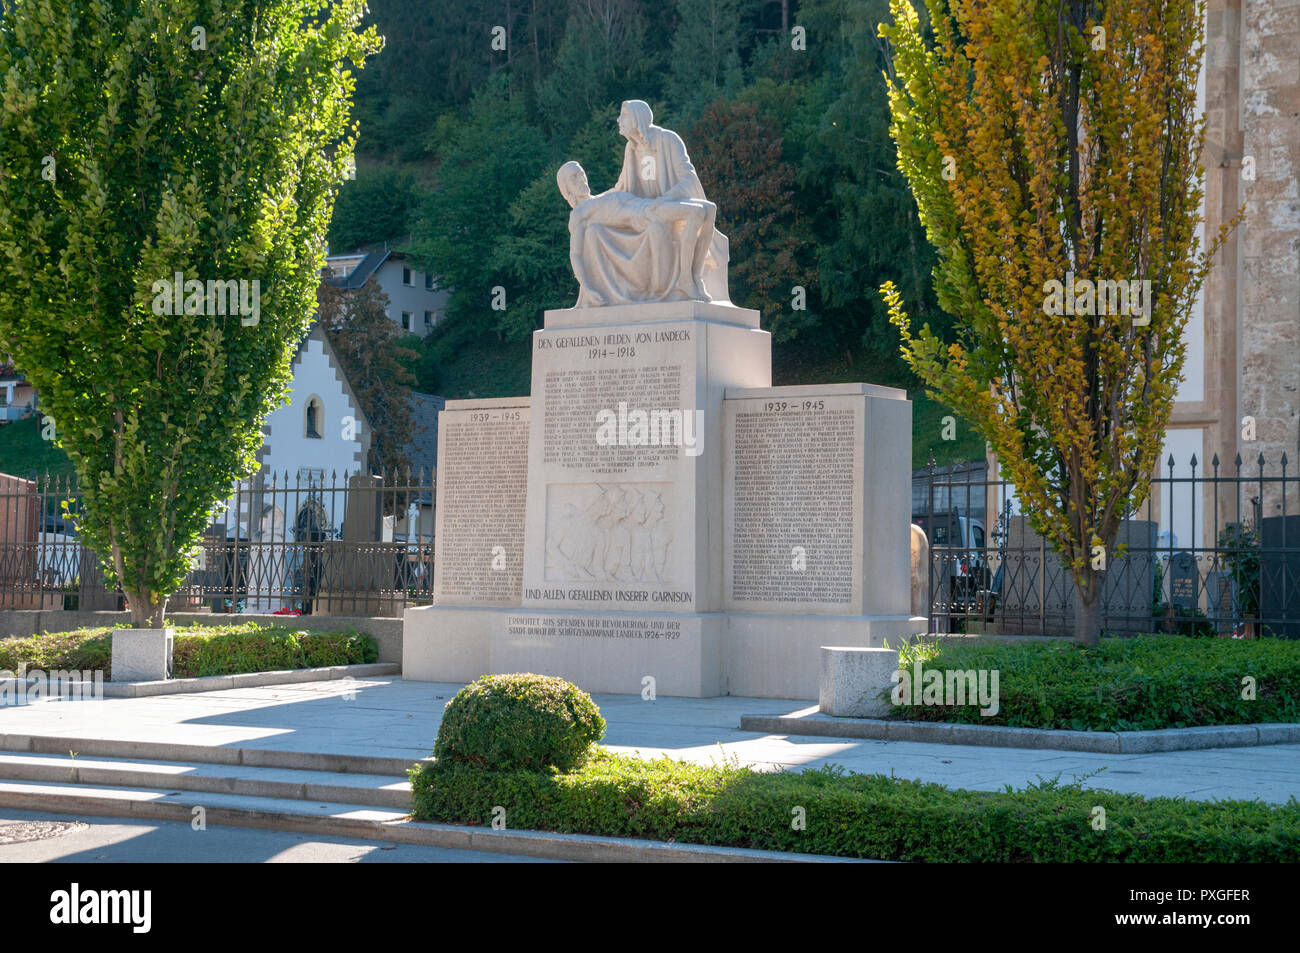 First and second World War memorial, Landeck, Tirol, Austria Stock Photo